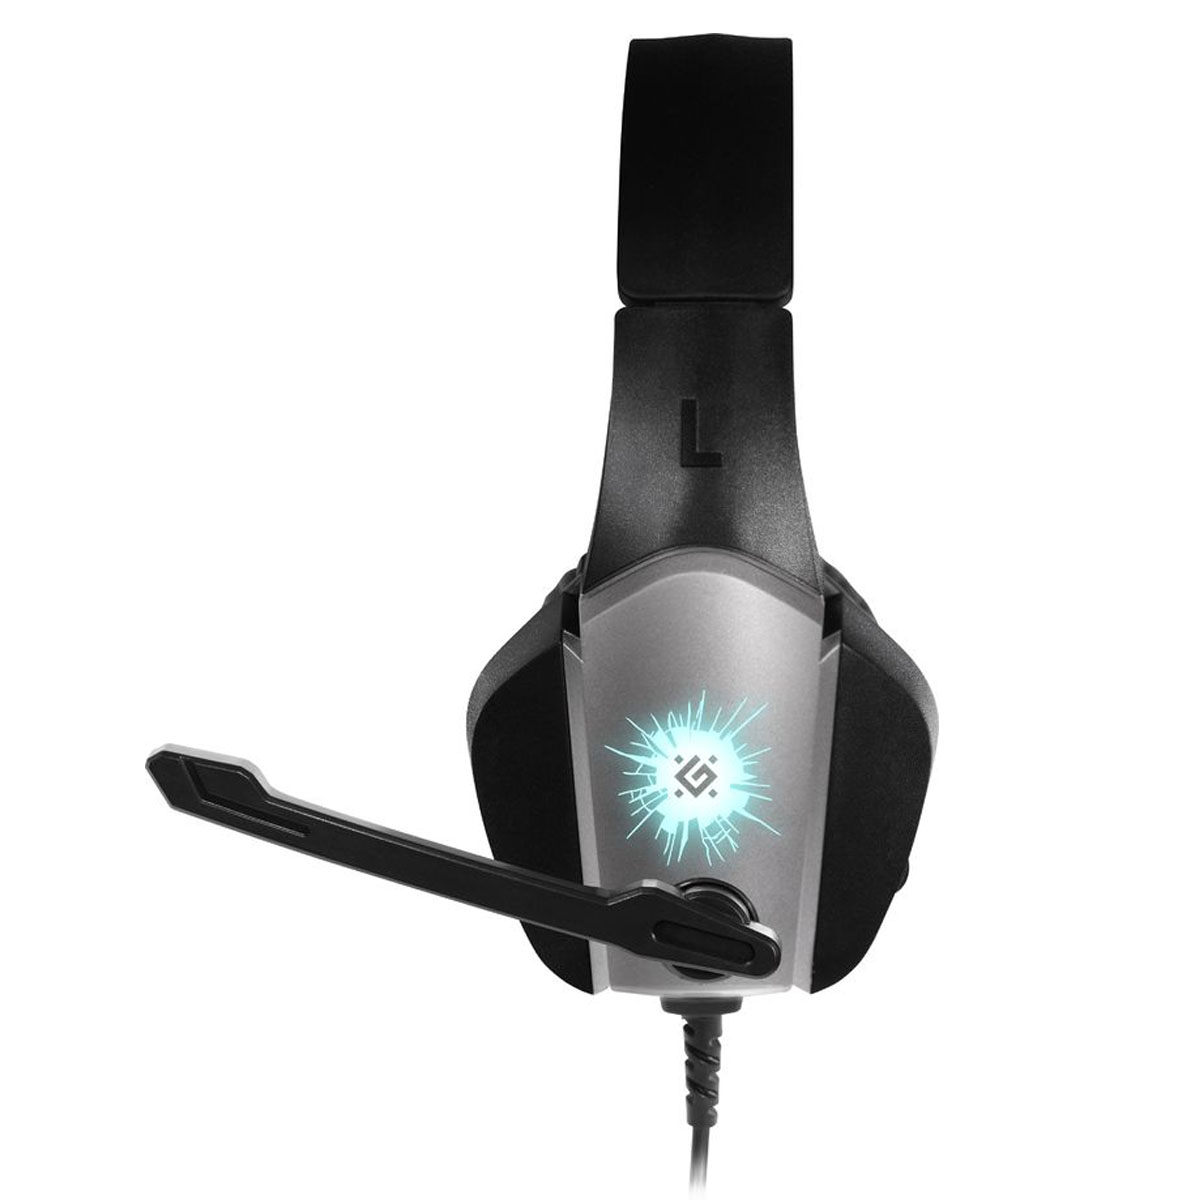 Игровая гарнитура (наушники с микрофоном) проводная, полноразмерная, DEFENDER X-SKULL, цвет черный